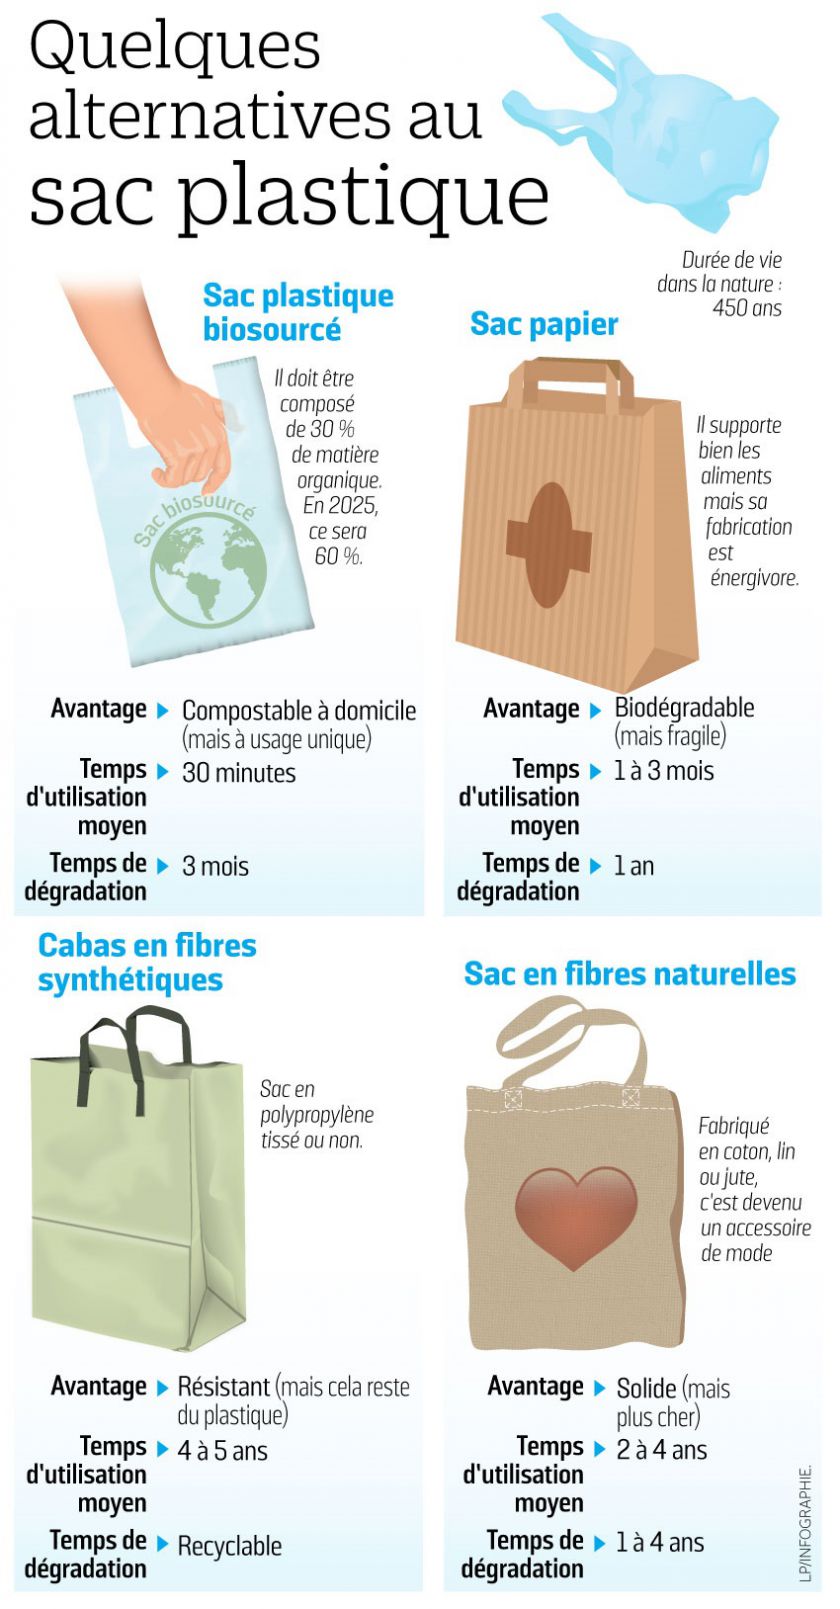 Bannir les sacs de plastique : efficace pour l'environnement ? Ça dépend